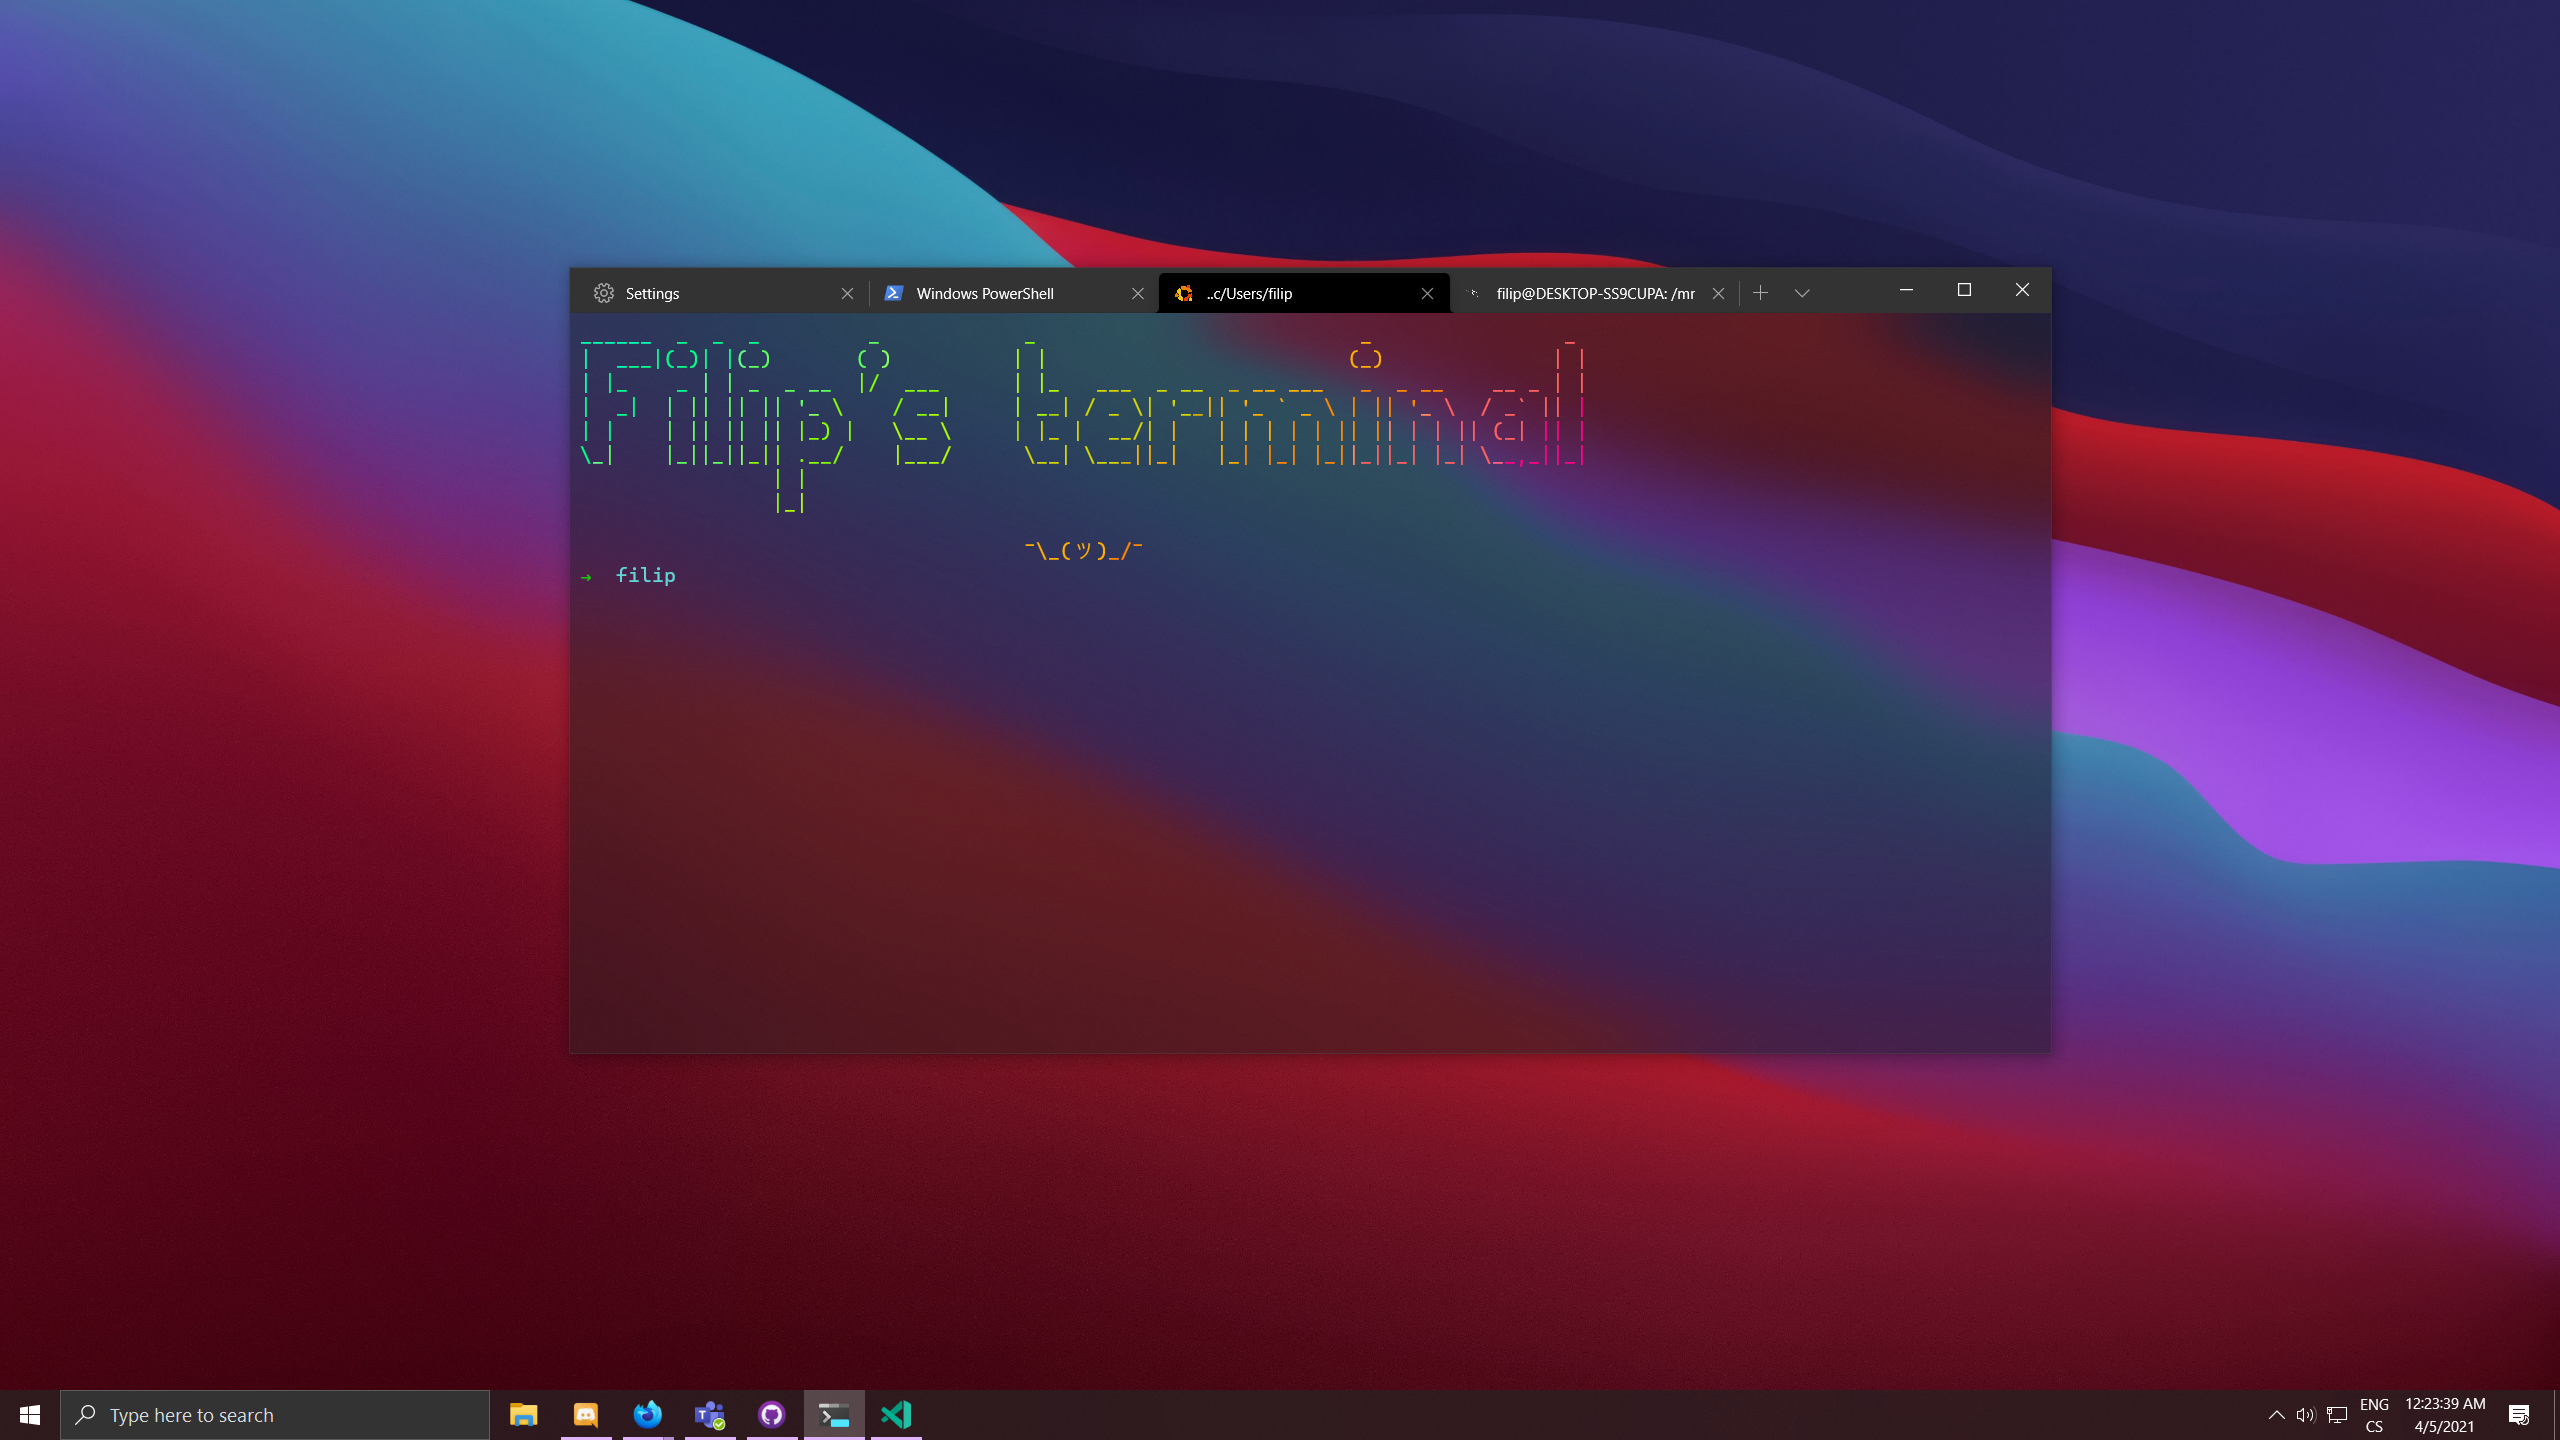 Desktop setup with multiple tabs